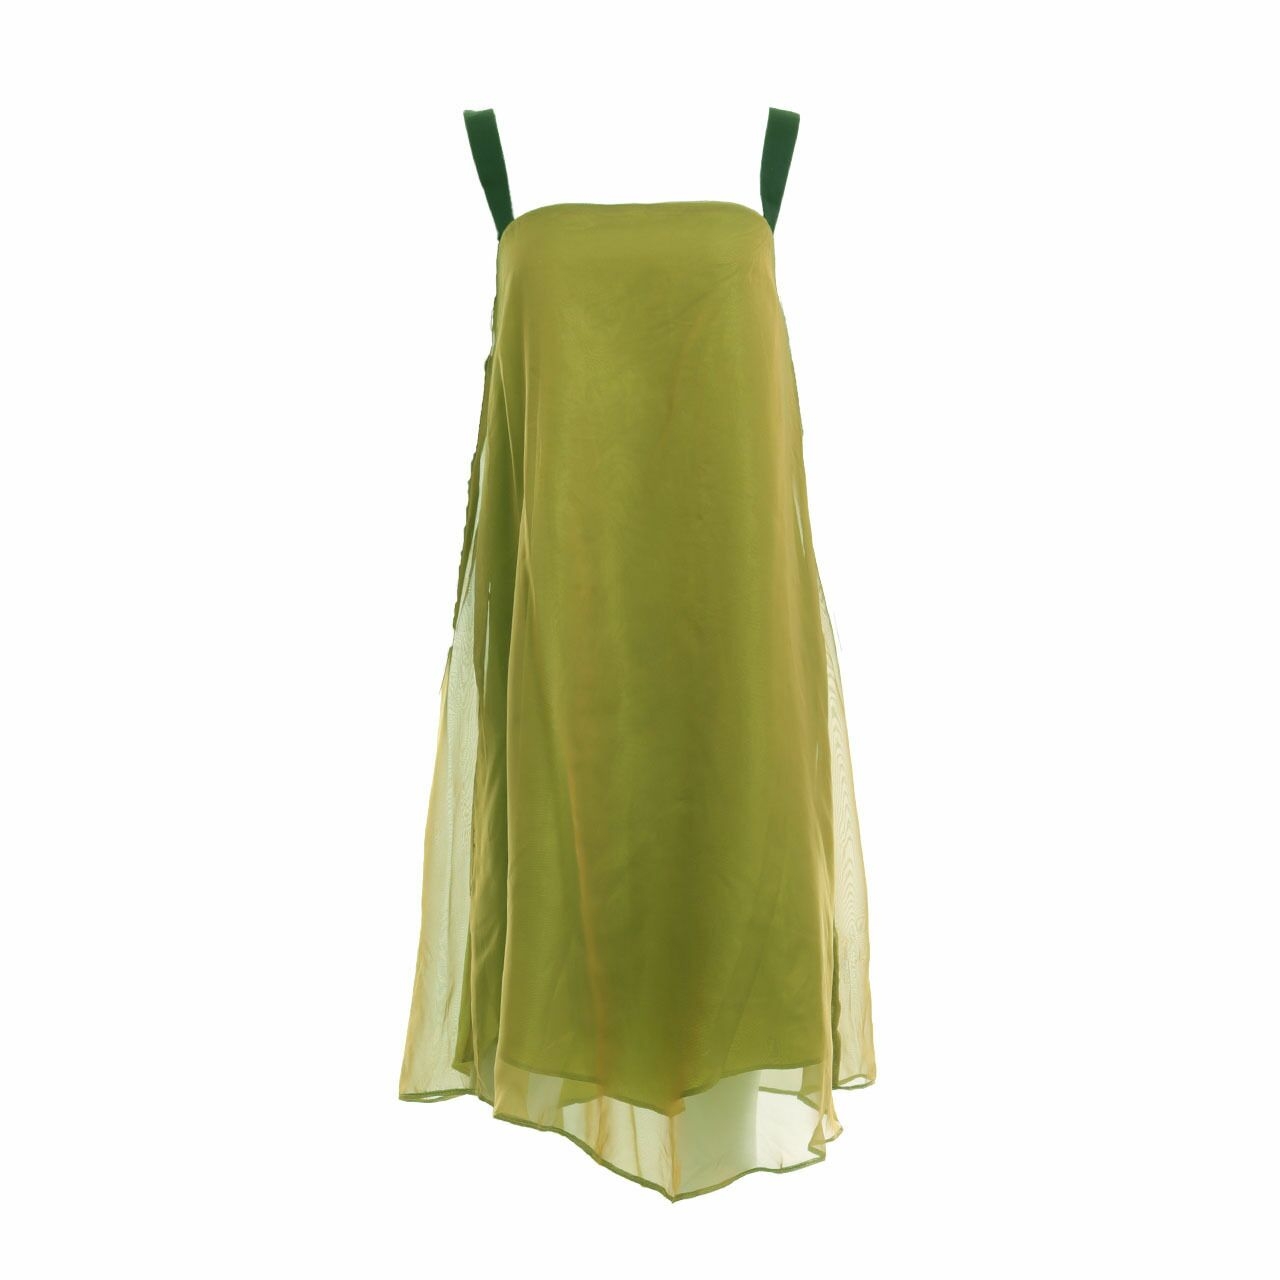 Ratel Green Mini Dress